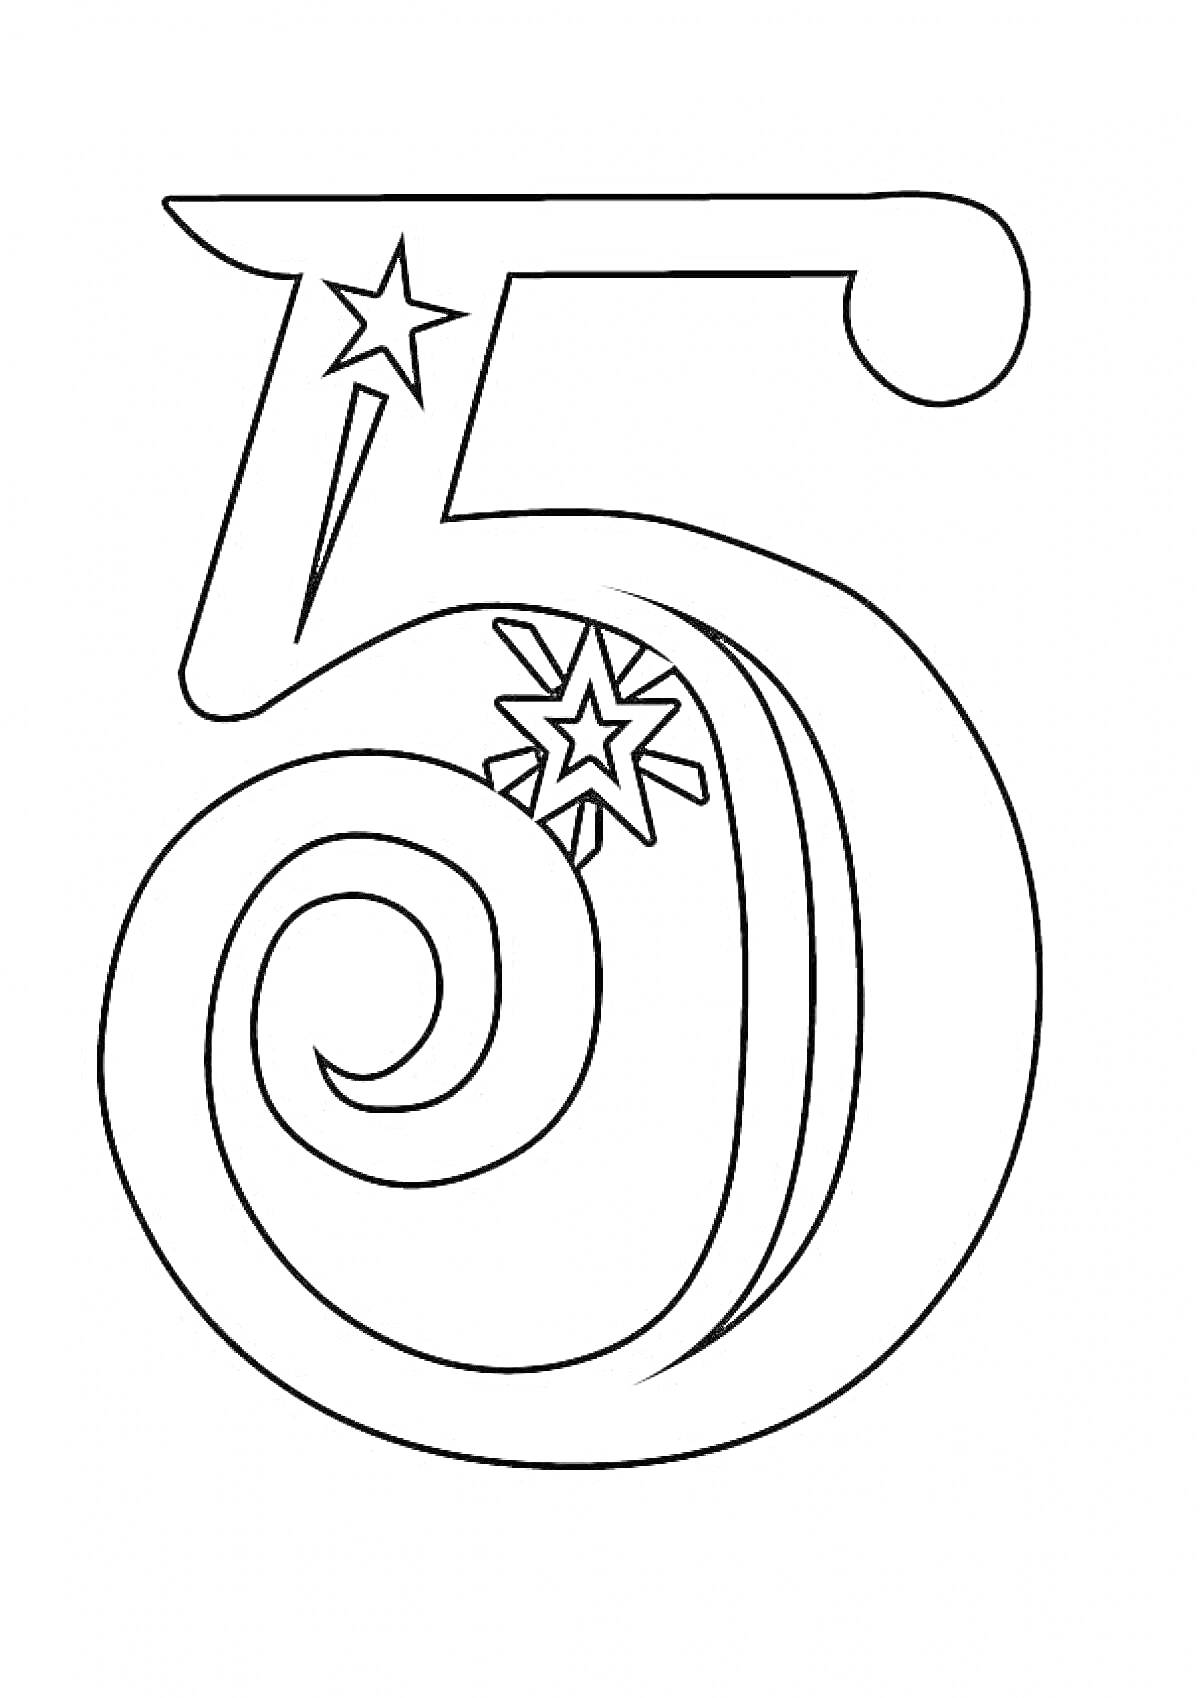 Раскраска Цифра 5 с витиеватыми линиями и звездами